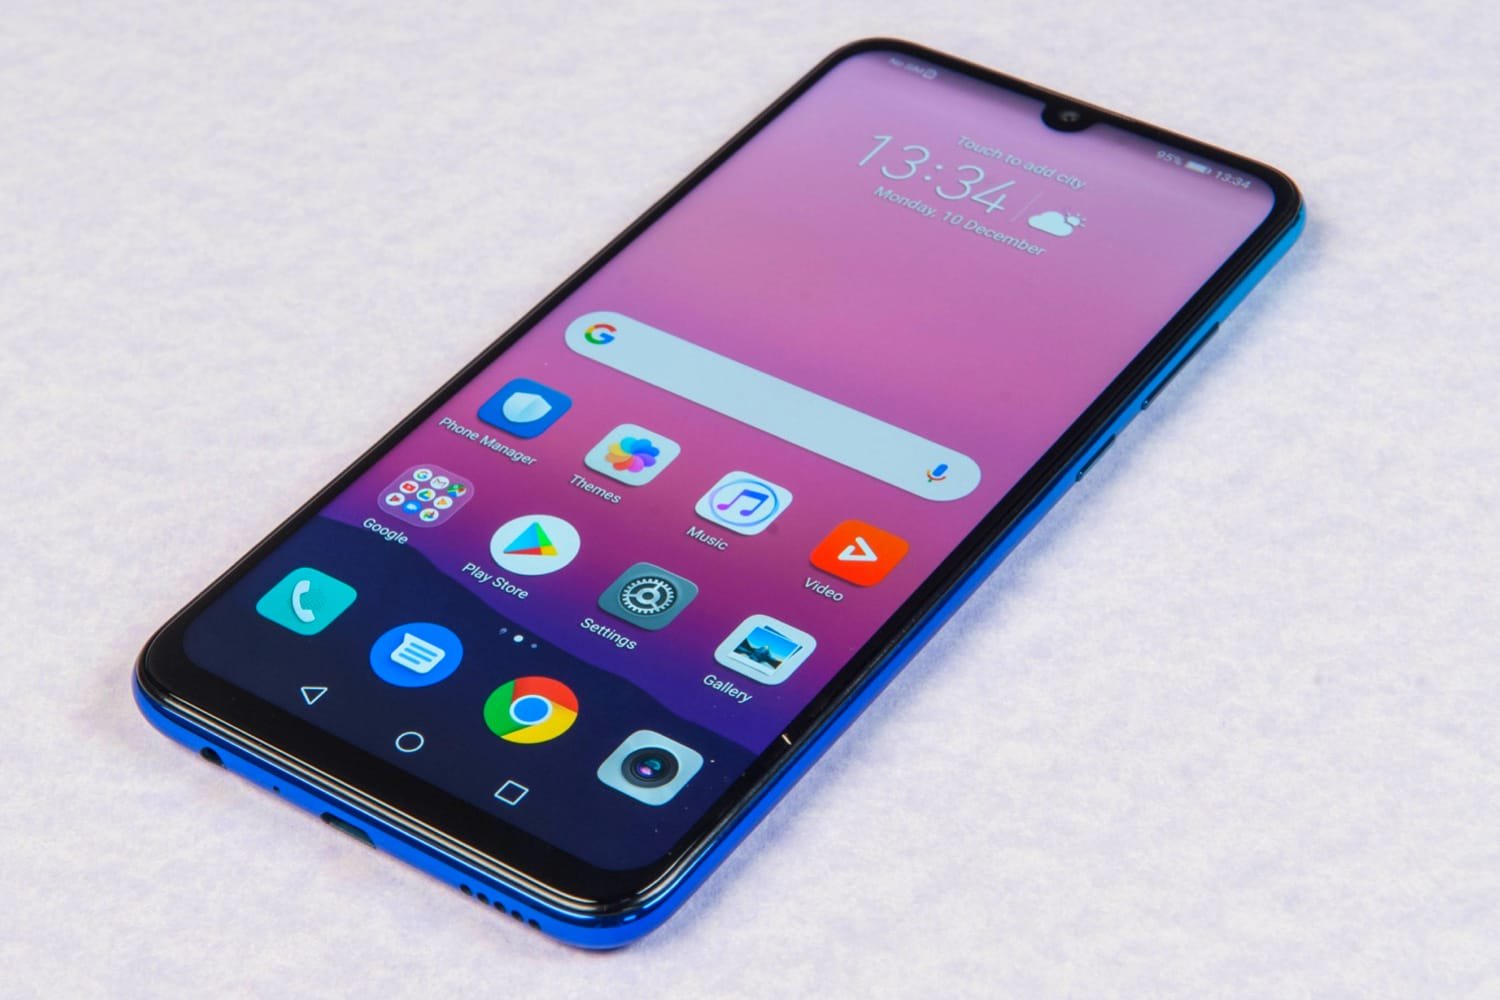 Aperçu des principales caractéristiques du smartphone Huawei P smart 2020